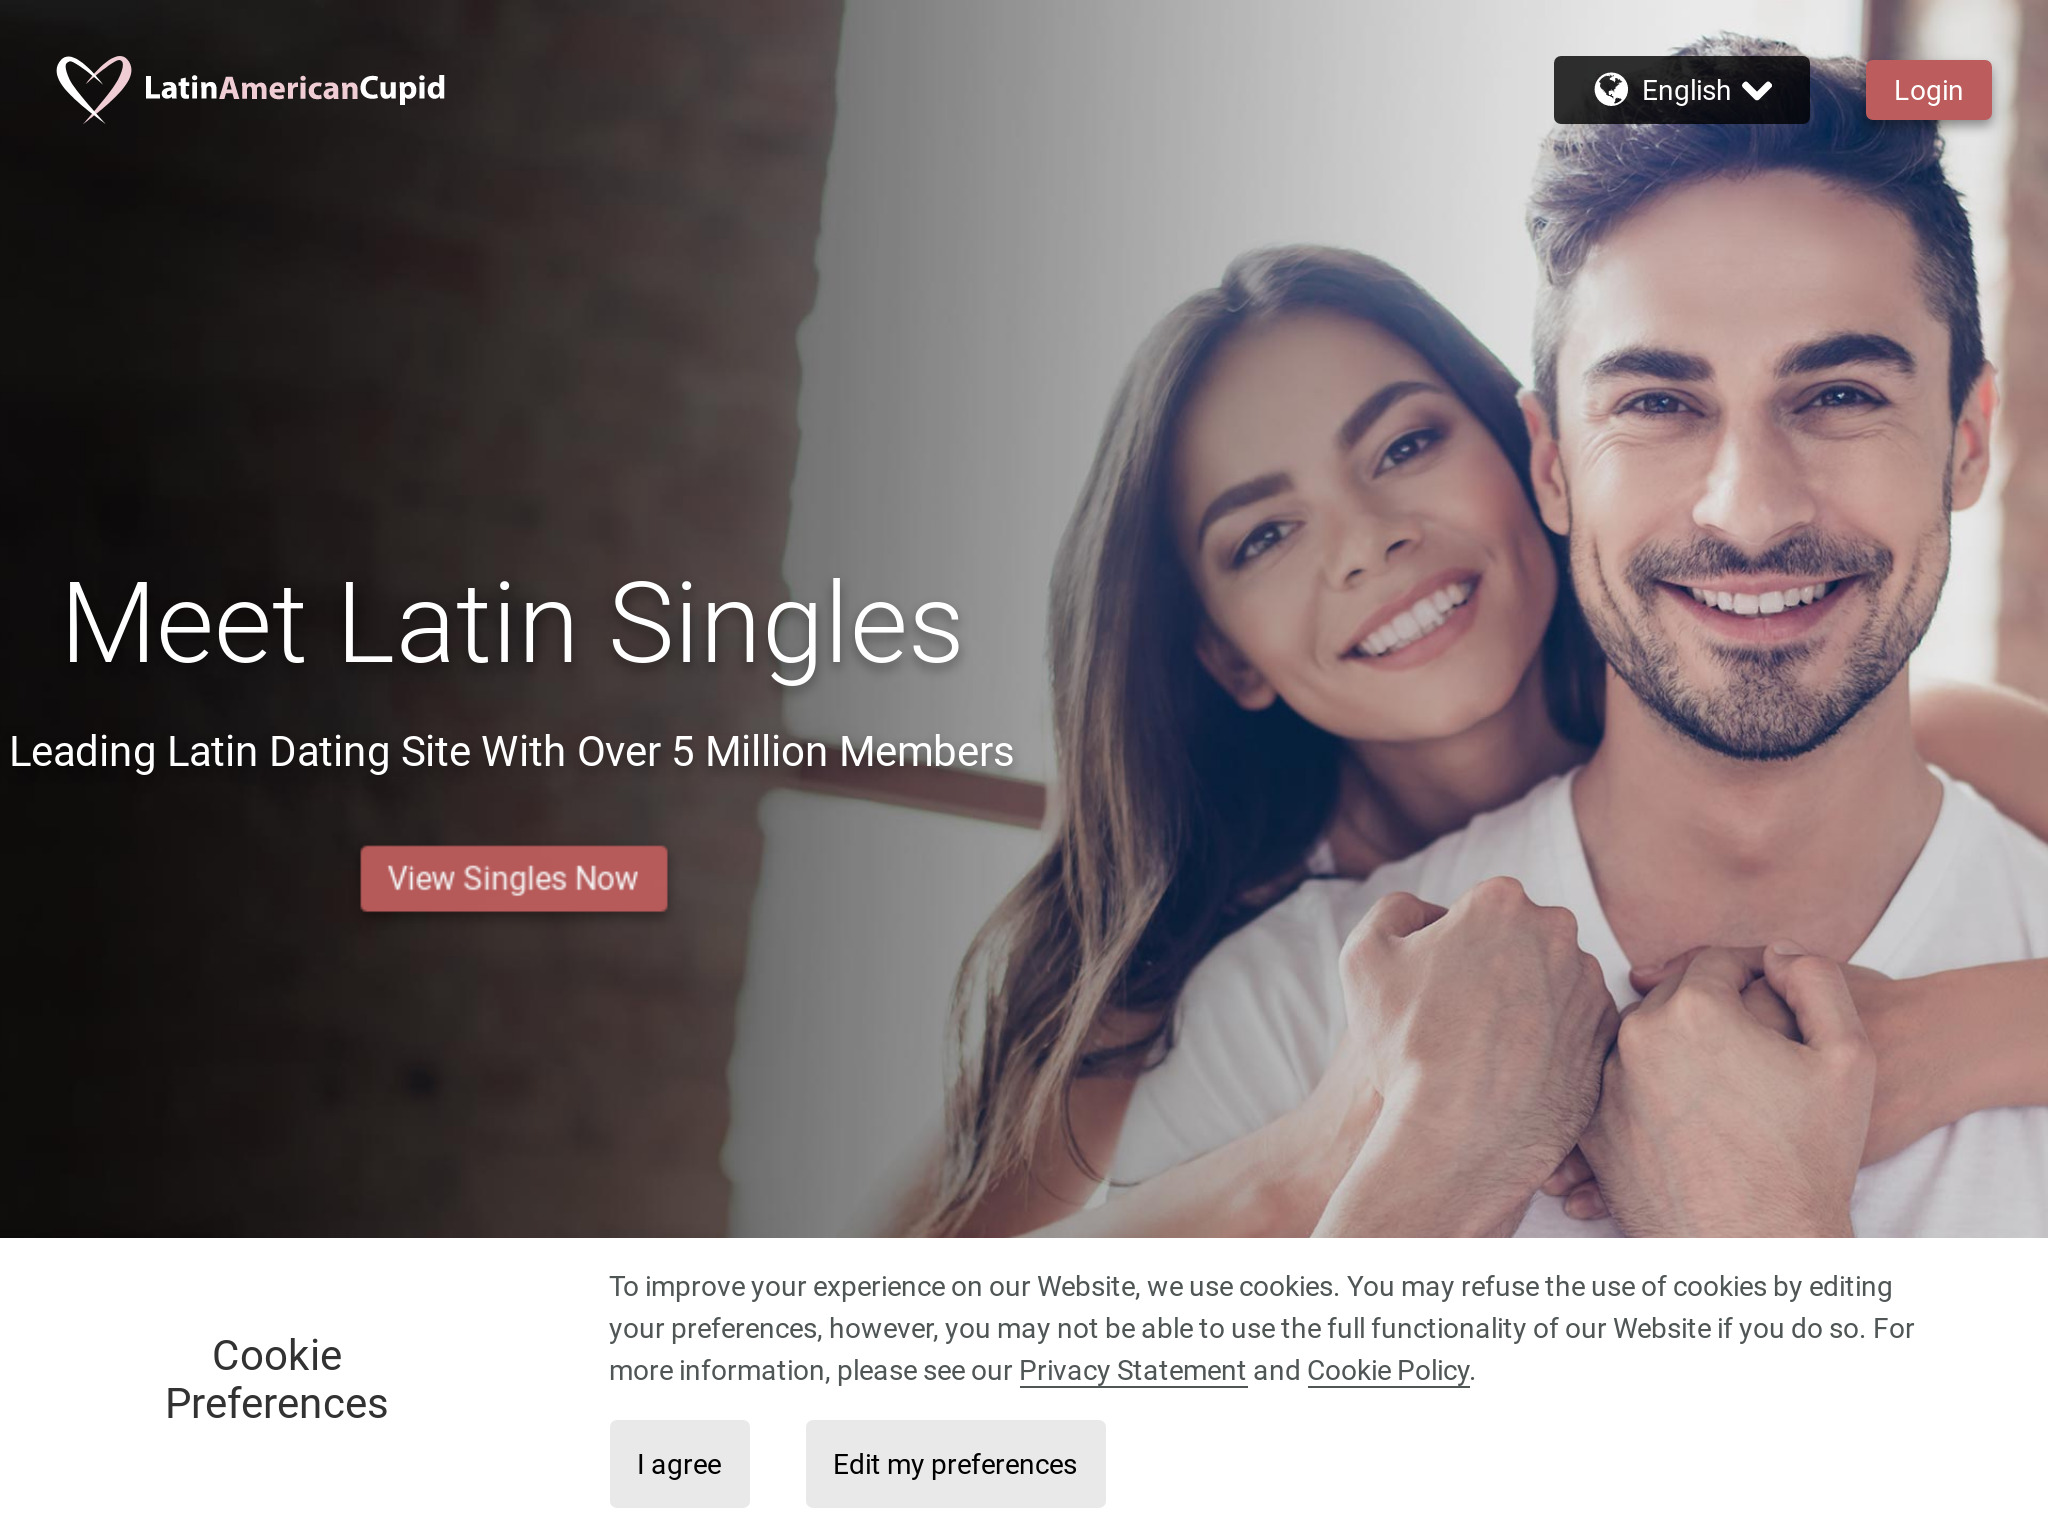 Volte ao jogo com nossa análise do LatinAmericanCupid